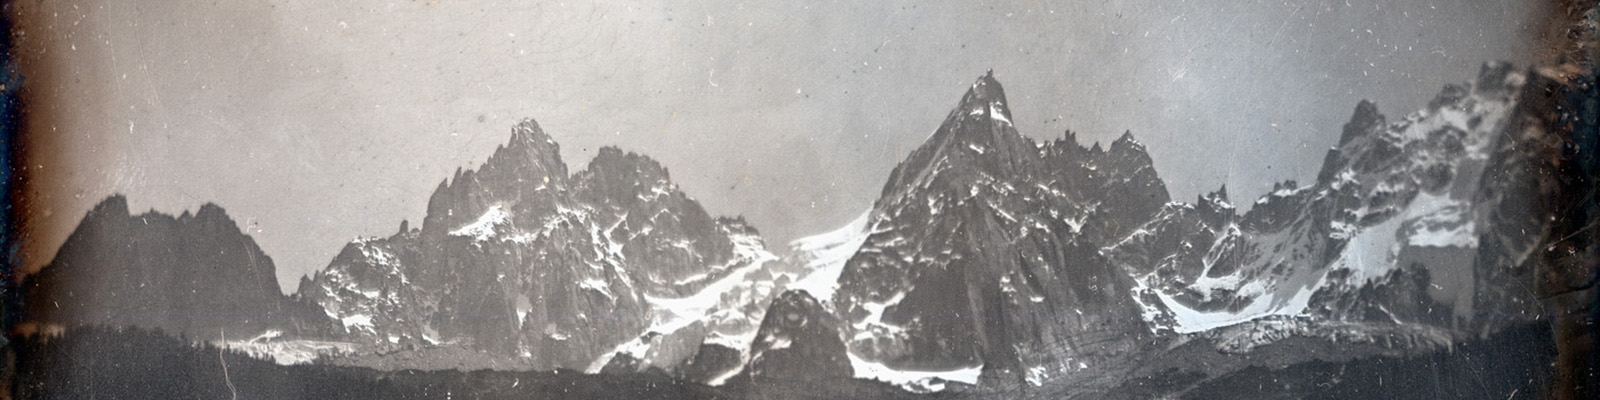 Daguerreotype of Les Aiguilles, Chamonix